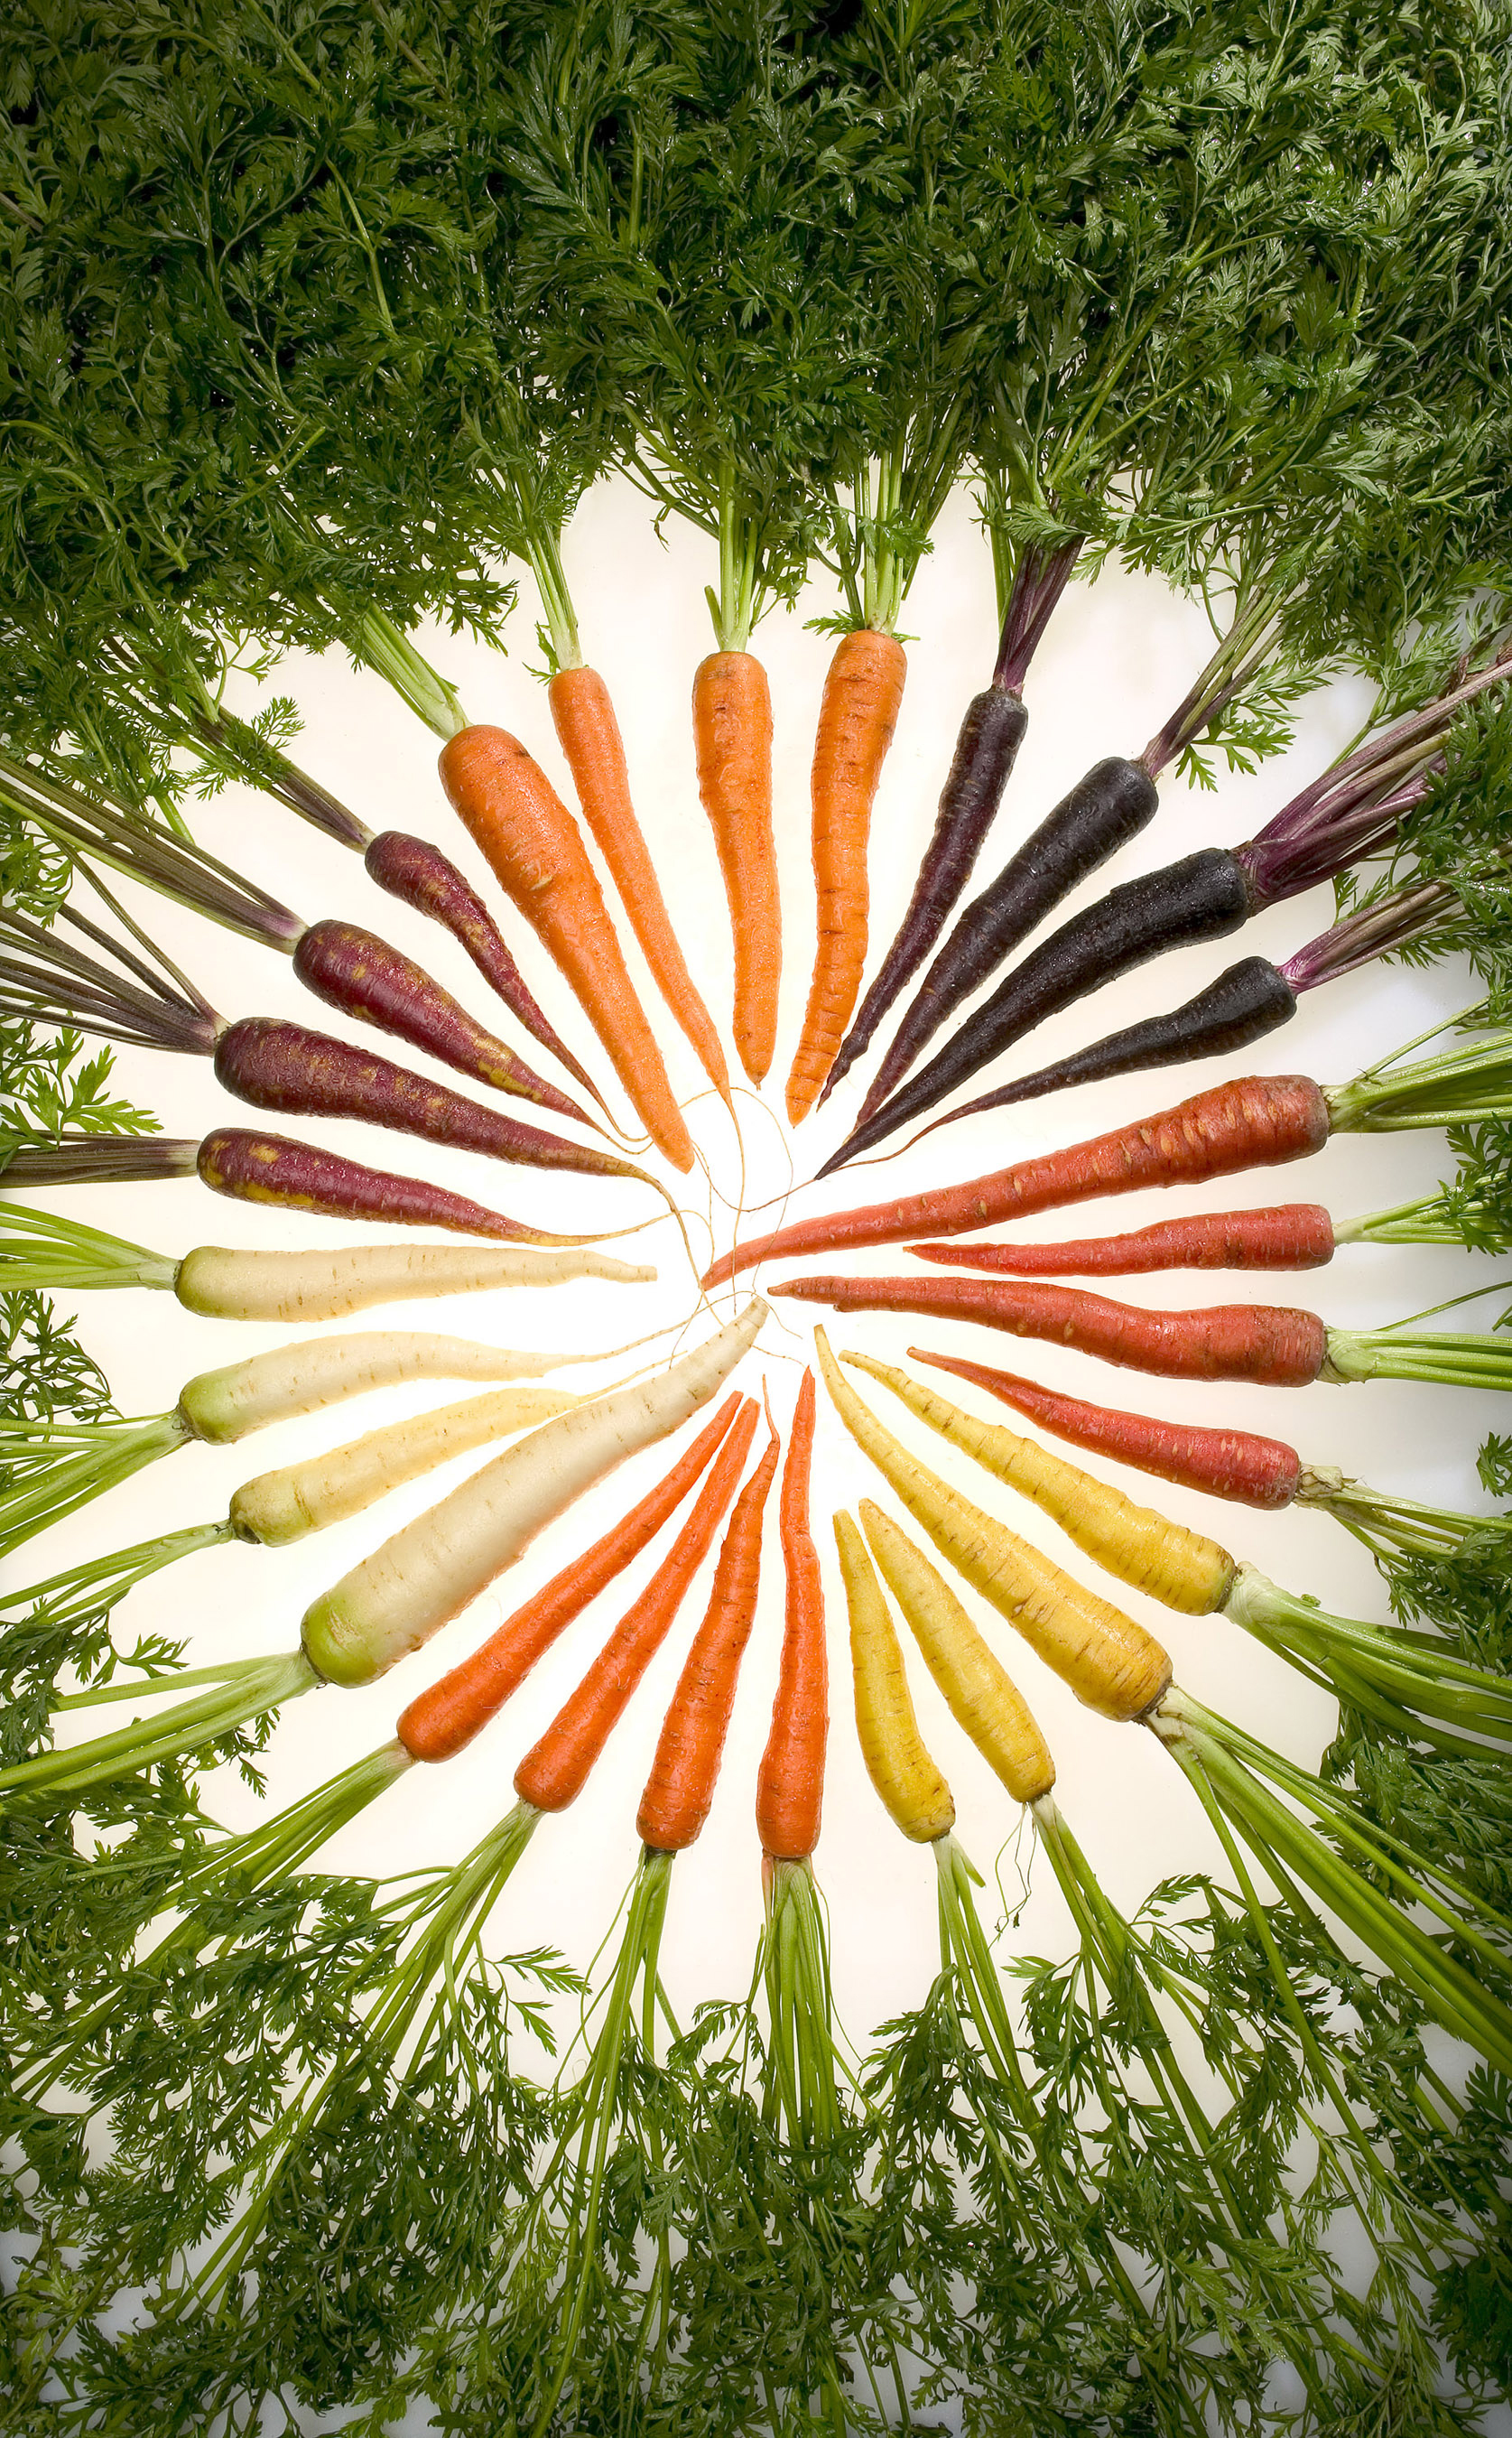 Vielfarbig - Vielseitig Karotten |Quelle Wikipedia © Stephen Ausmus [Public domain]